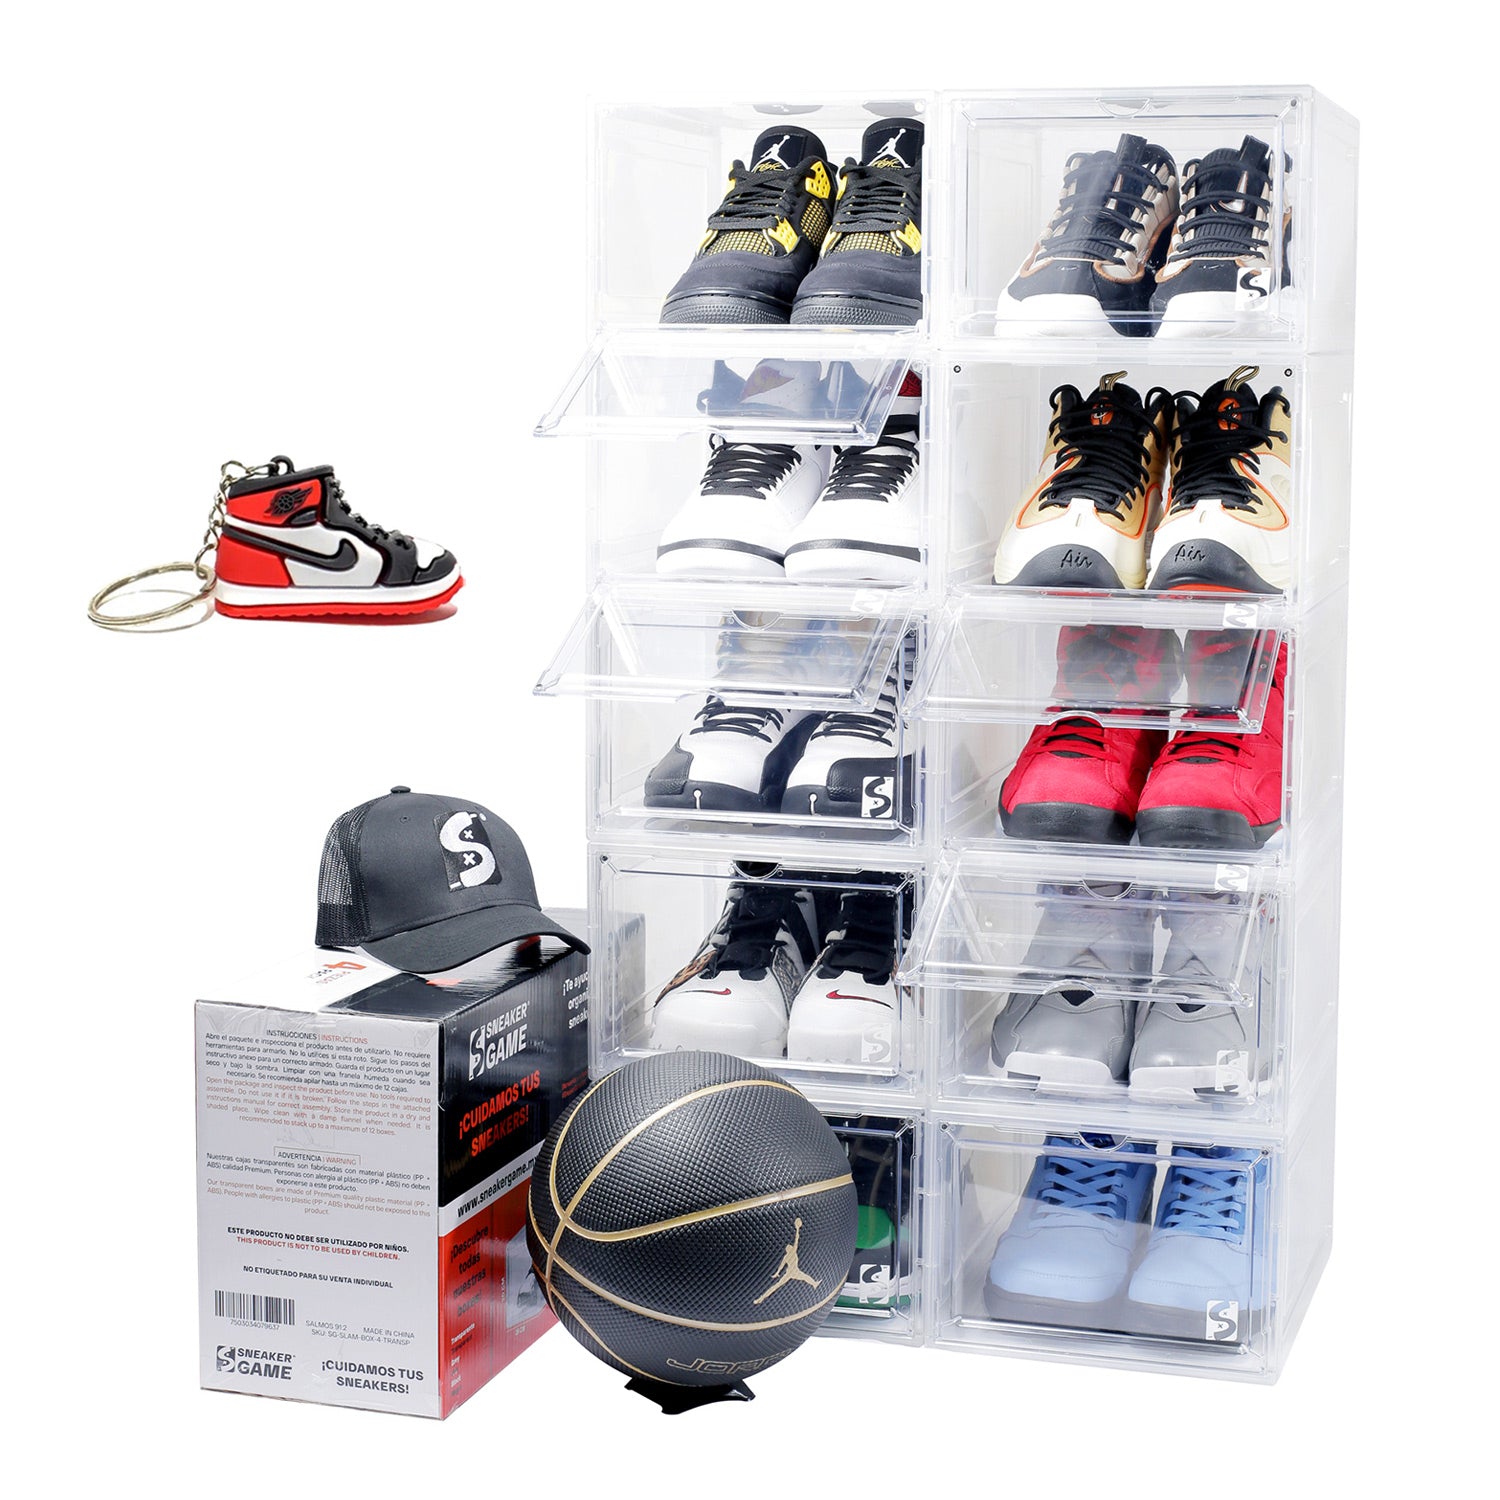 6 Piezas Caja De Zapatos Transparente Sneakers Organizador